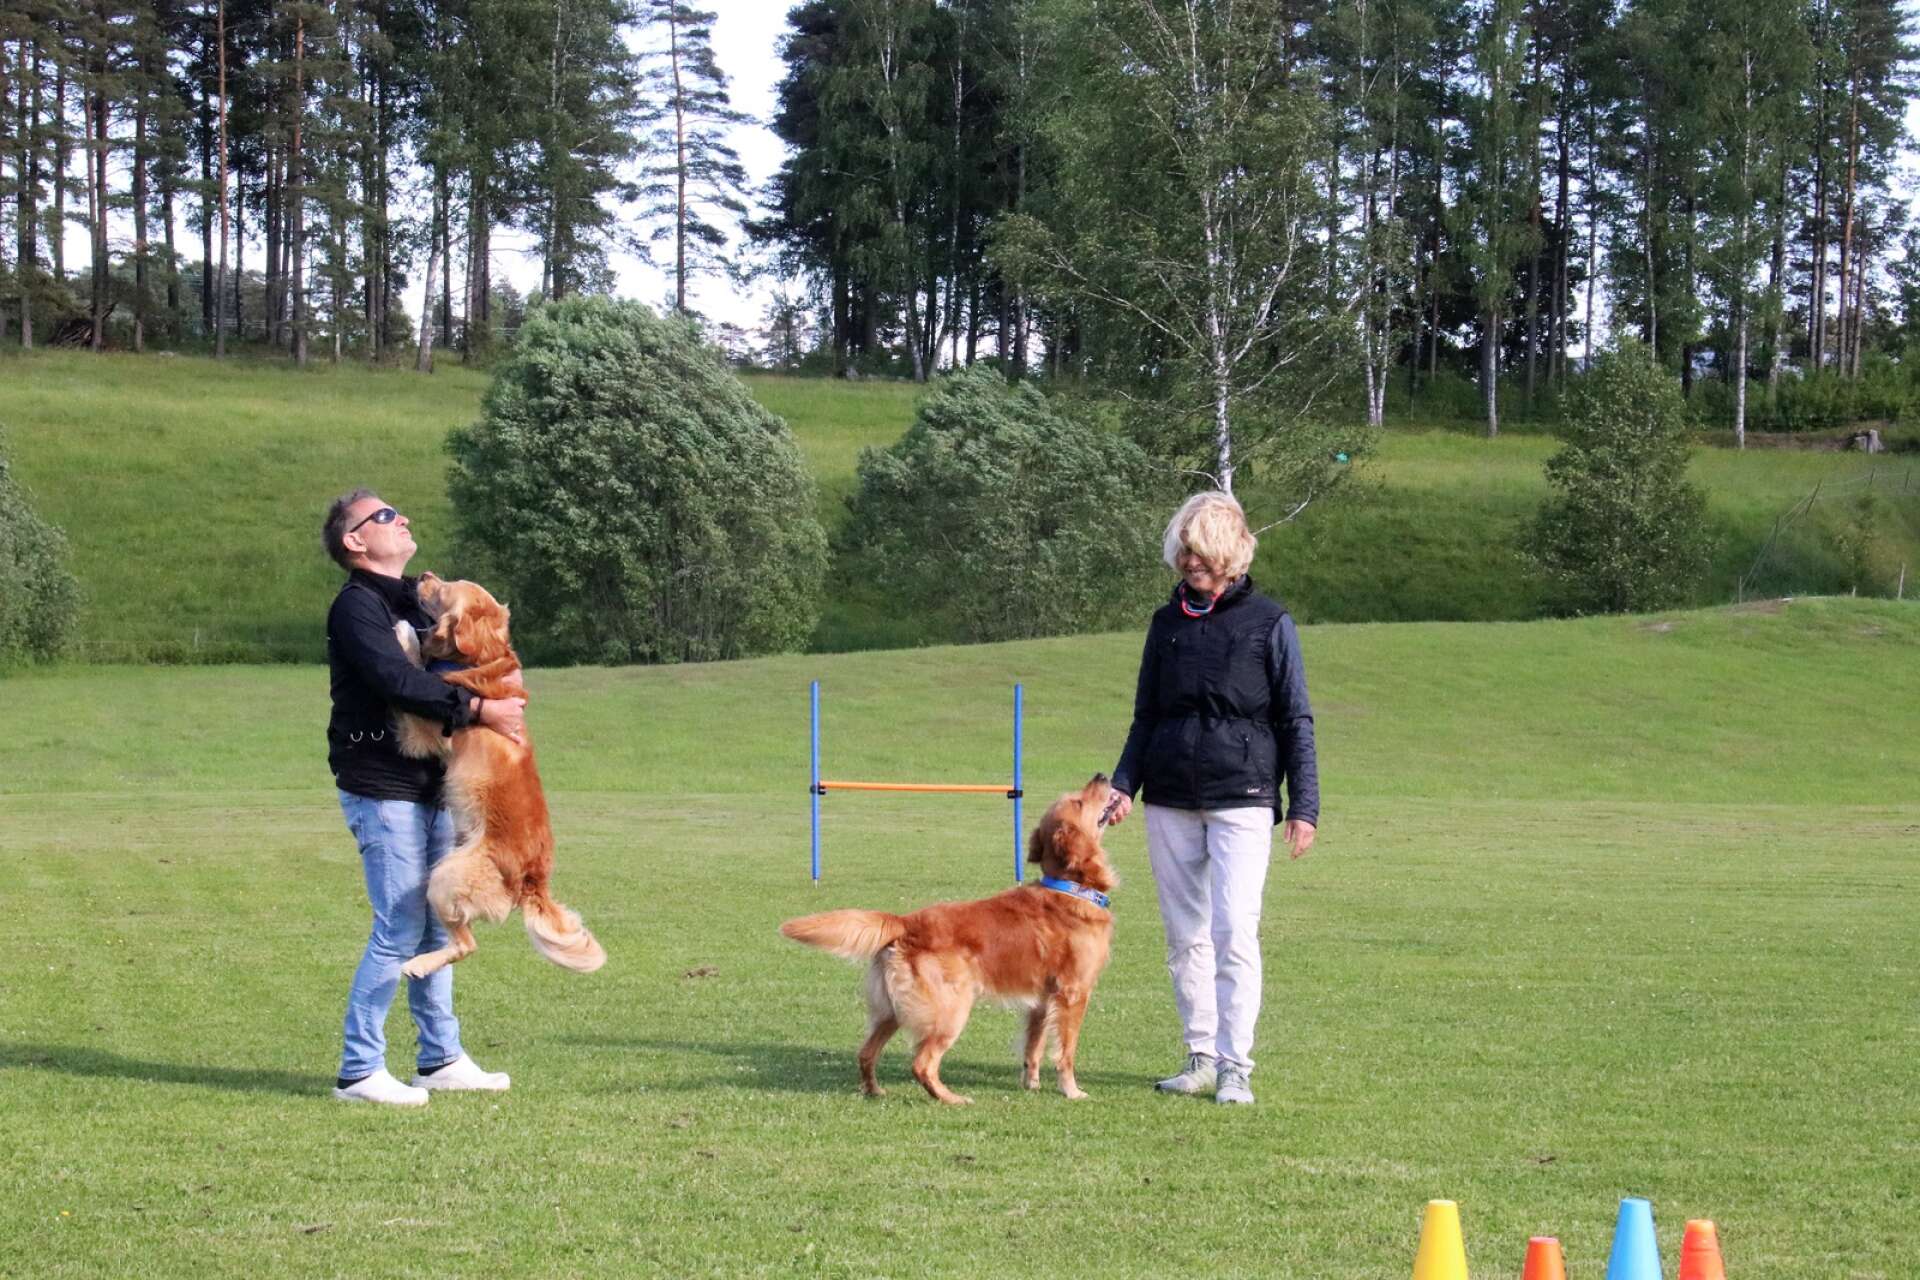 Åmåls Brukshundsklubb hade två ekipage i SM-finalen i tävlingslydnad i Värnamo. Samboparet Erling Sunnarvik och Solveig Nyvold från Tösse med hundarna Taco och Silas hade båda kvalificerat sig och ställdes mot varandra.